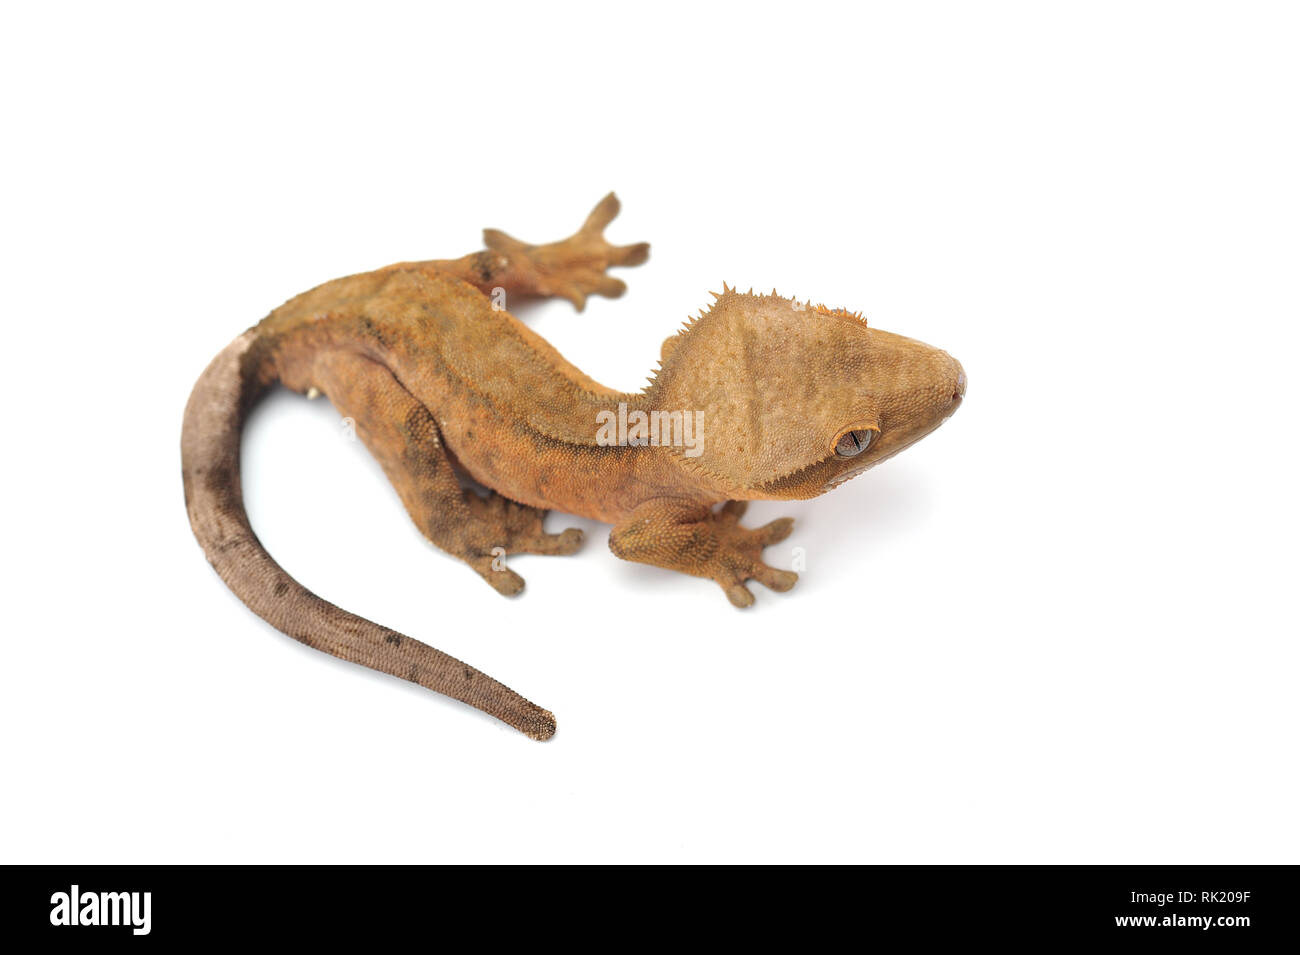 Crested gecko isolati su sfondo bianco Foto Stock